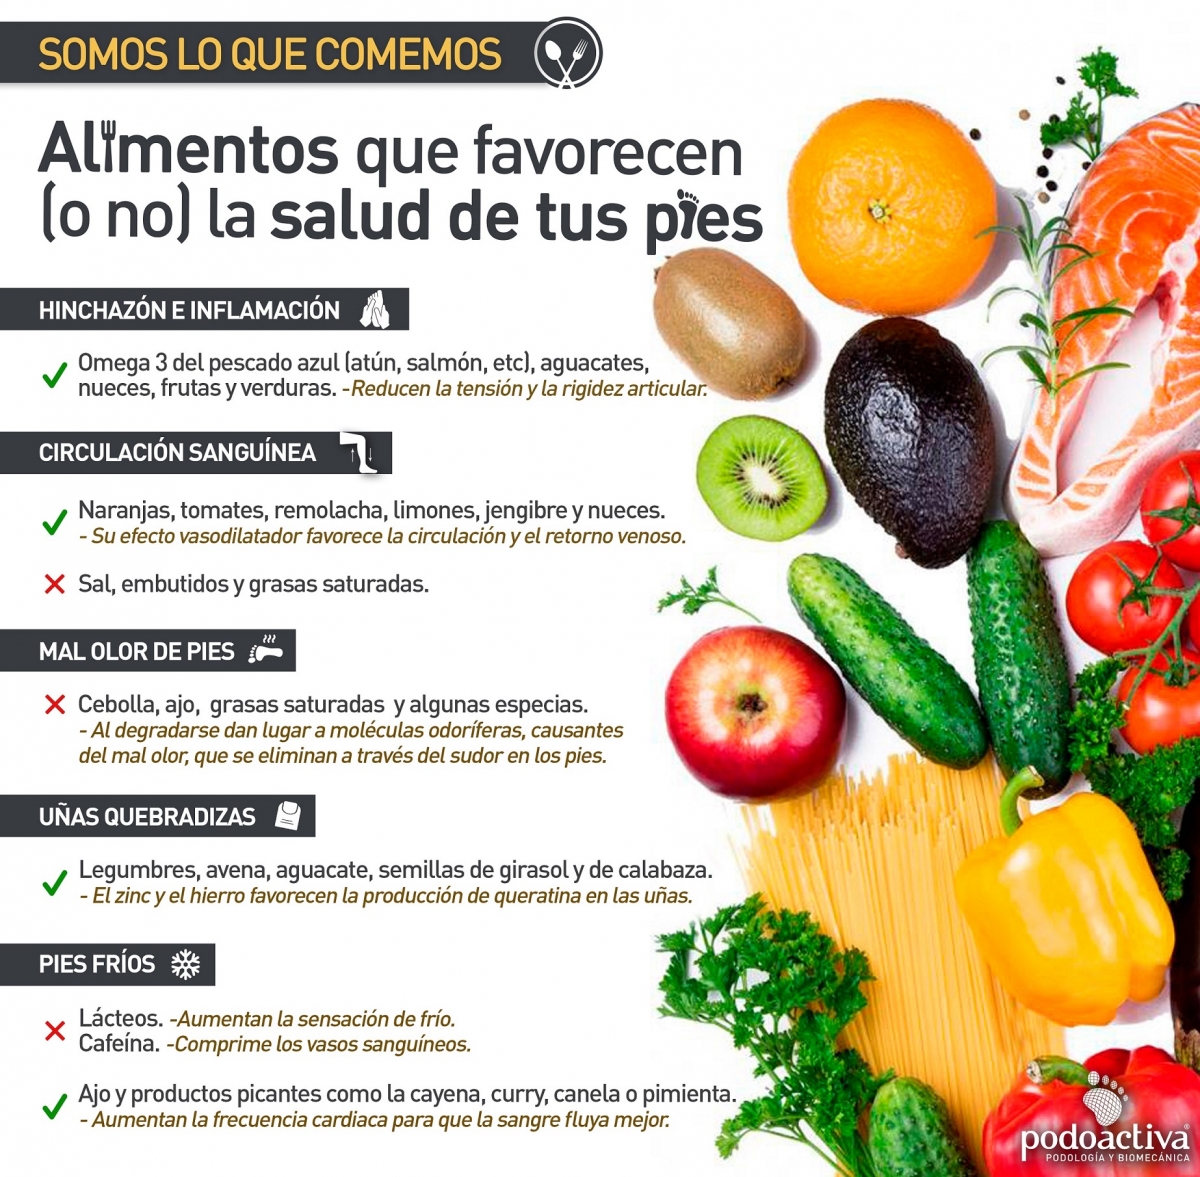 Infografía de Podoactiva sobre alimentos que favorecen la salud de nuestros pies